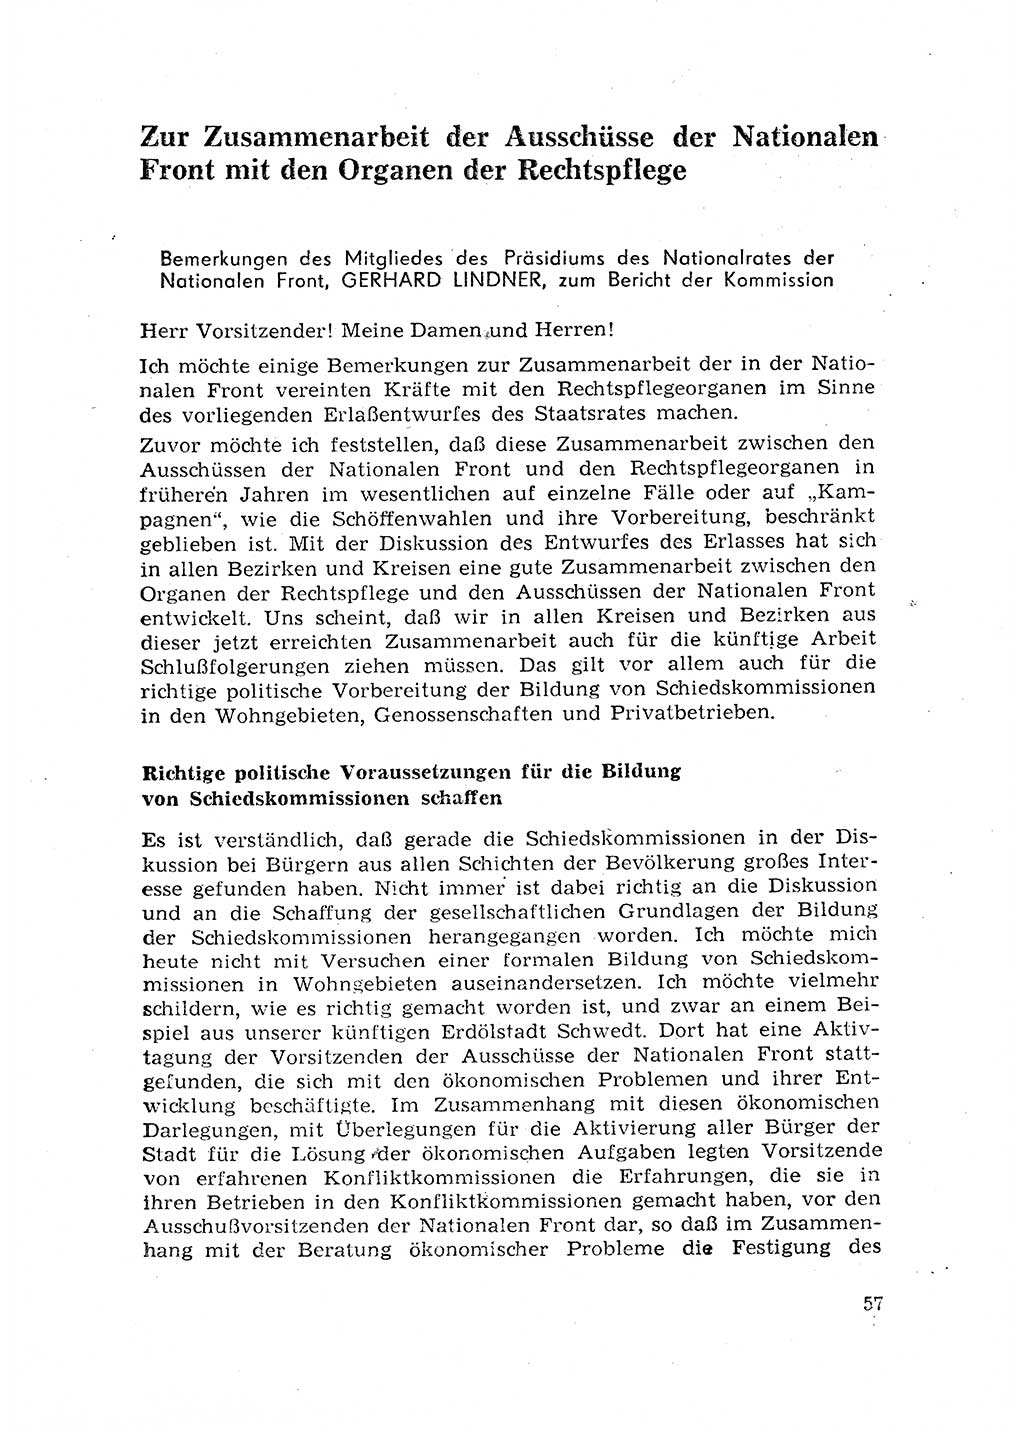 Rechtspflegeerlaß [Deutsche Demokratische Republik (DDR)] 1963, Seite 57 (R.-Pfl.-Erl. DDR 1963, S. 57)